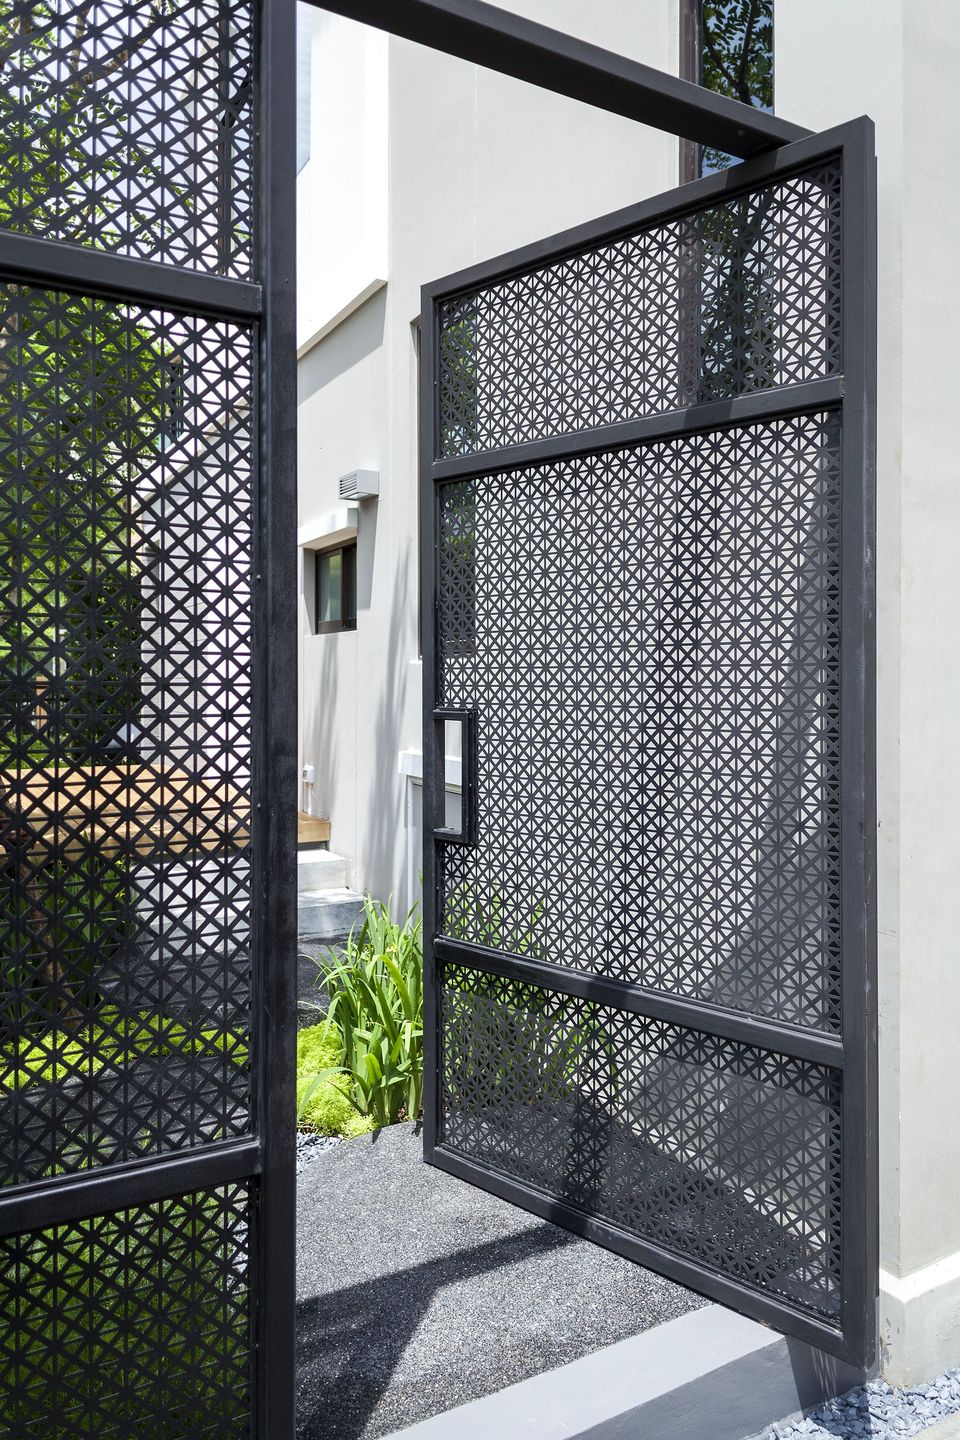 Batasi privasi di rumah dengan menggunakan model pagar jaring-jaring.